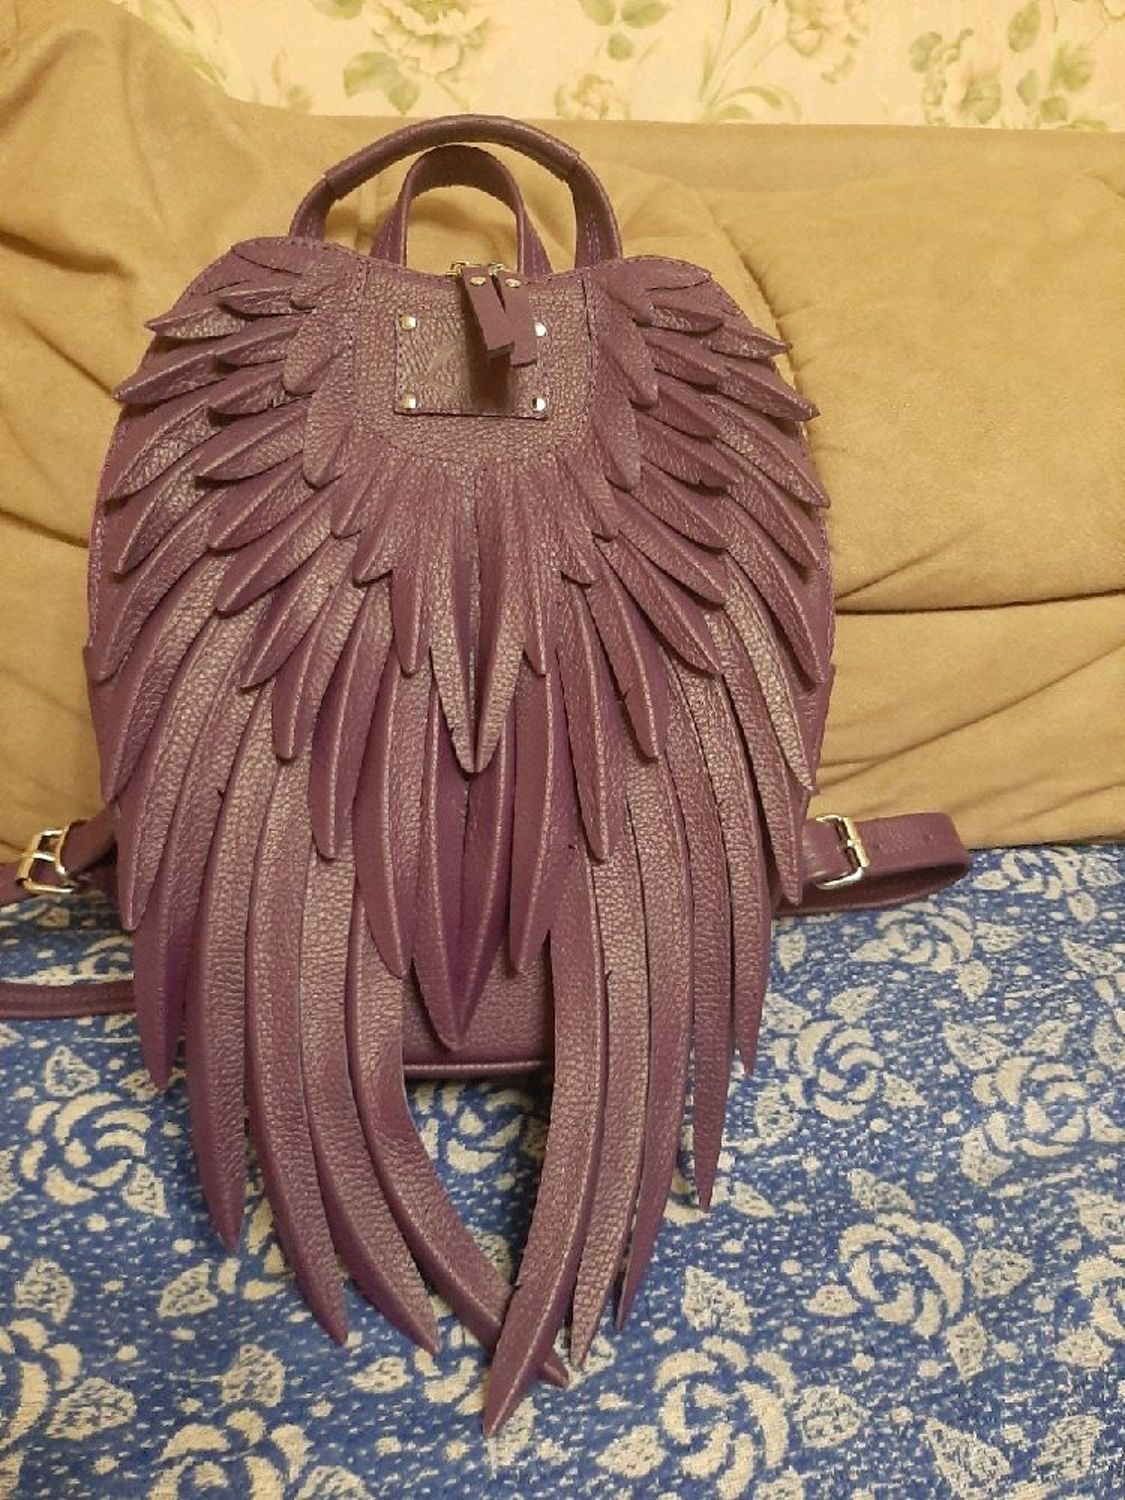 Photo №1 к отзыву покупателя Verevkina Natalya о товаре Женский кожаный рюкзак "Violet Angel"